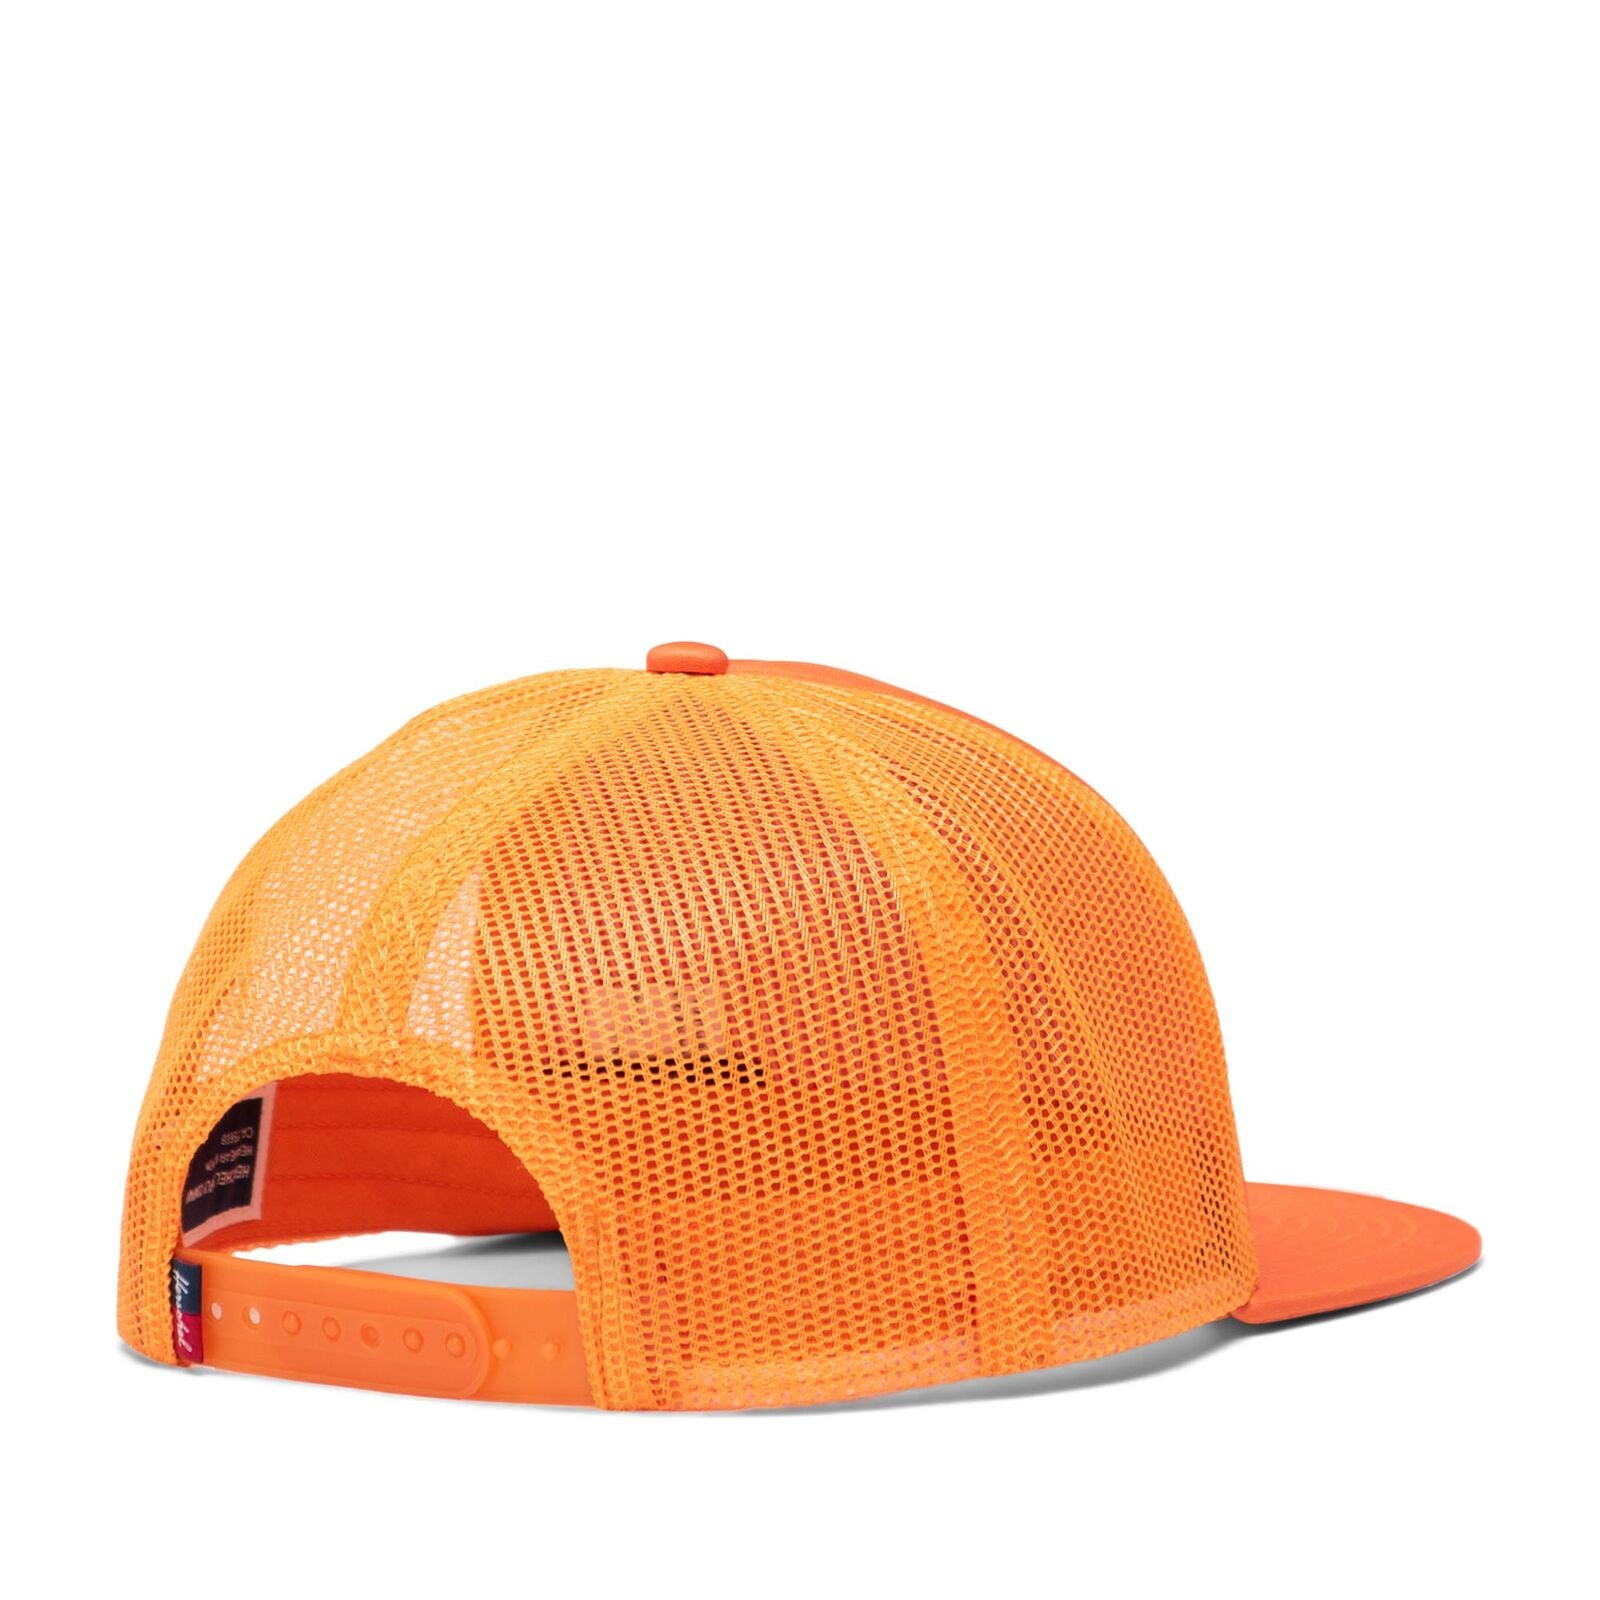 Herschel Şapka Whaler Mesh Safety Orange